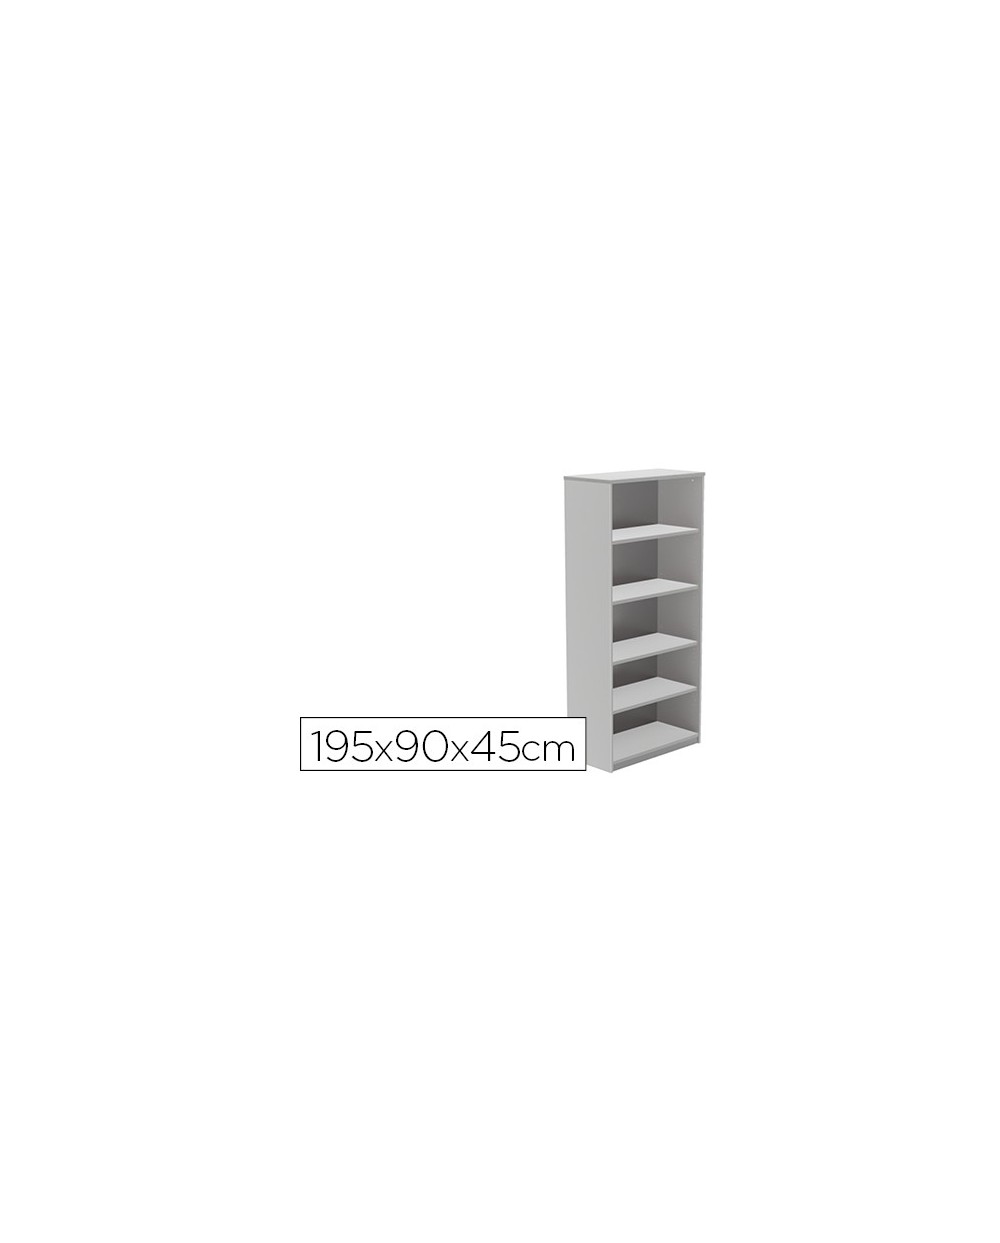 Armario rocada con cuatro estantes serie store 195x90x45 cm acabado gris ab02